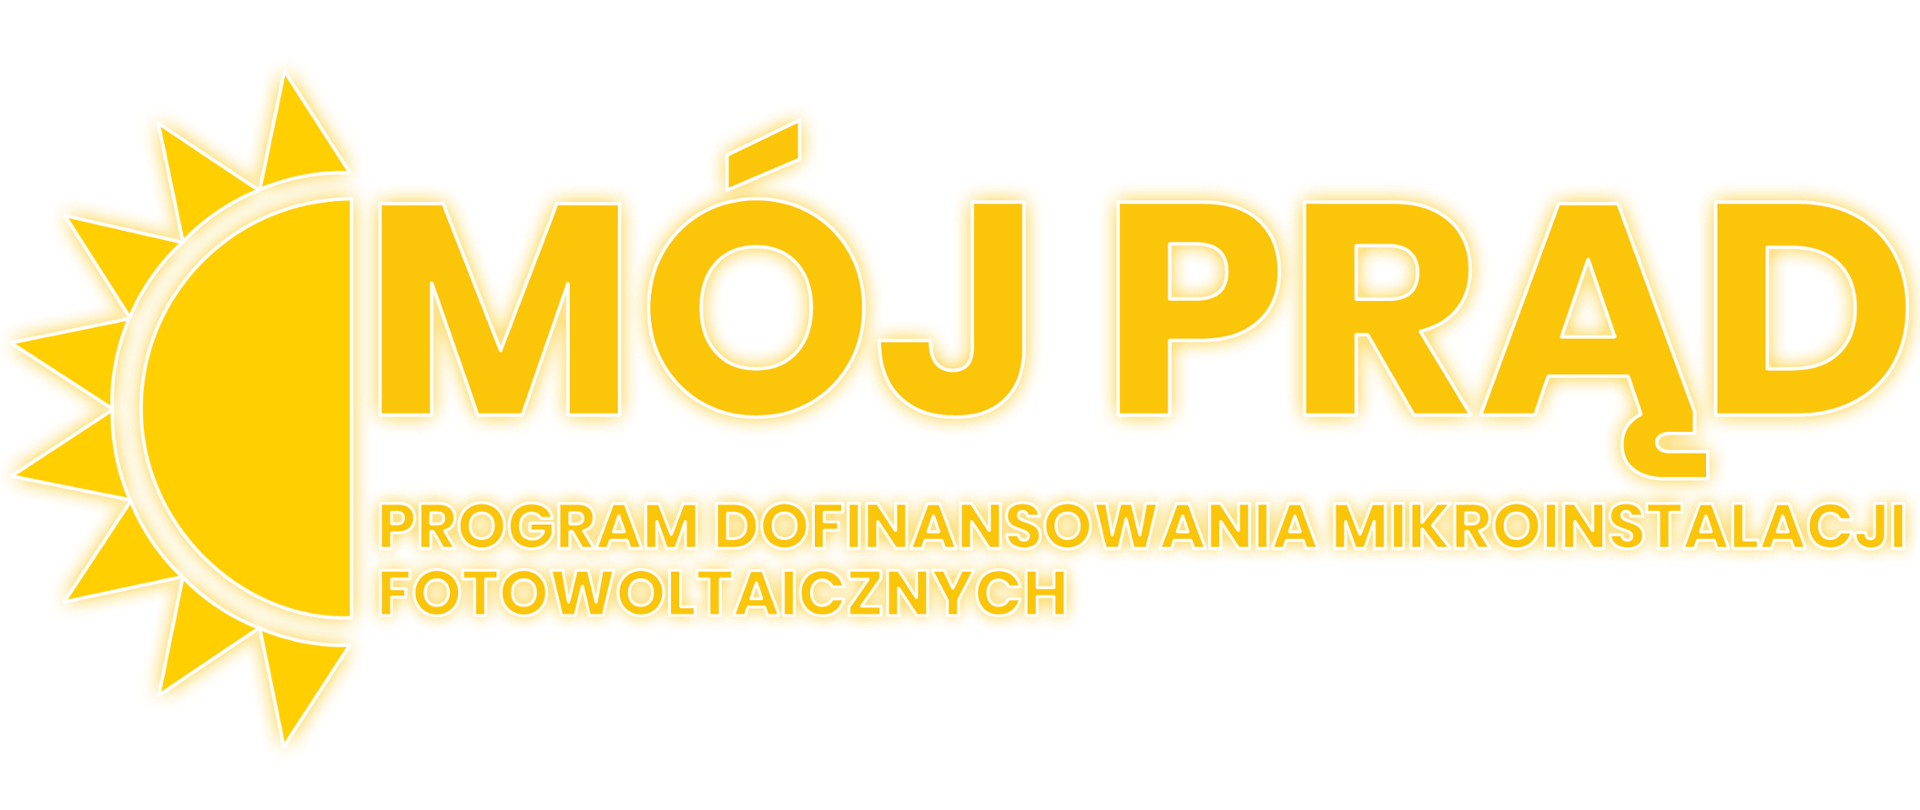 Logotyp programu "Mój Prąd"